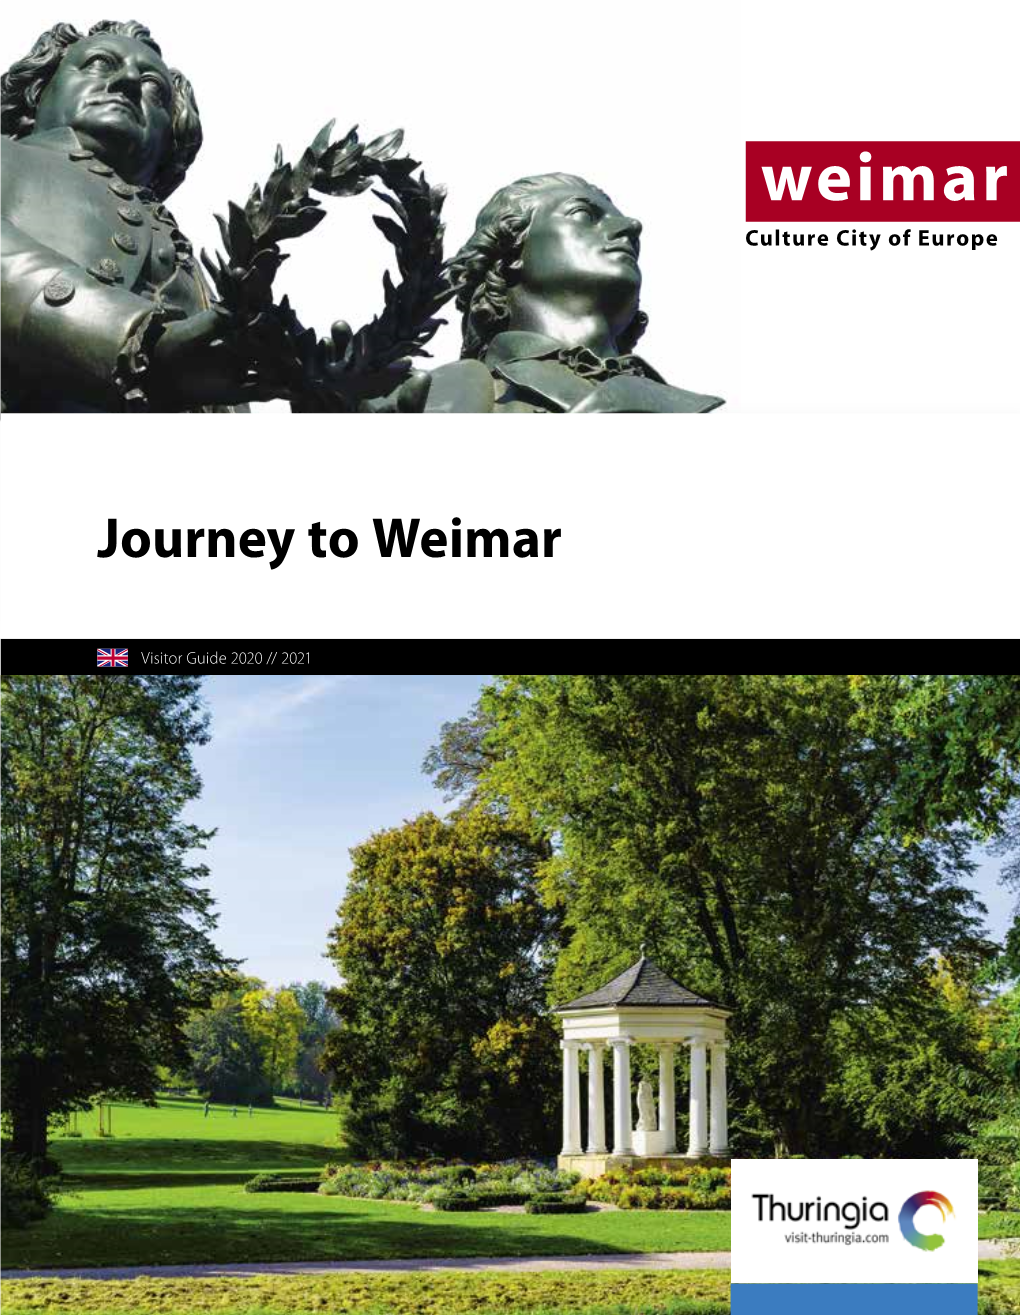 Journey to Weimar